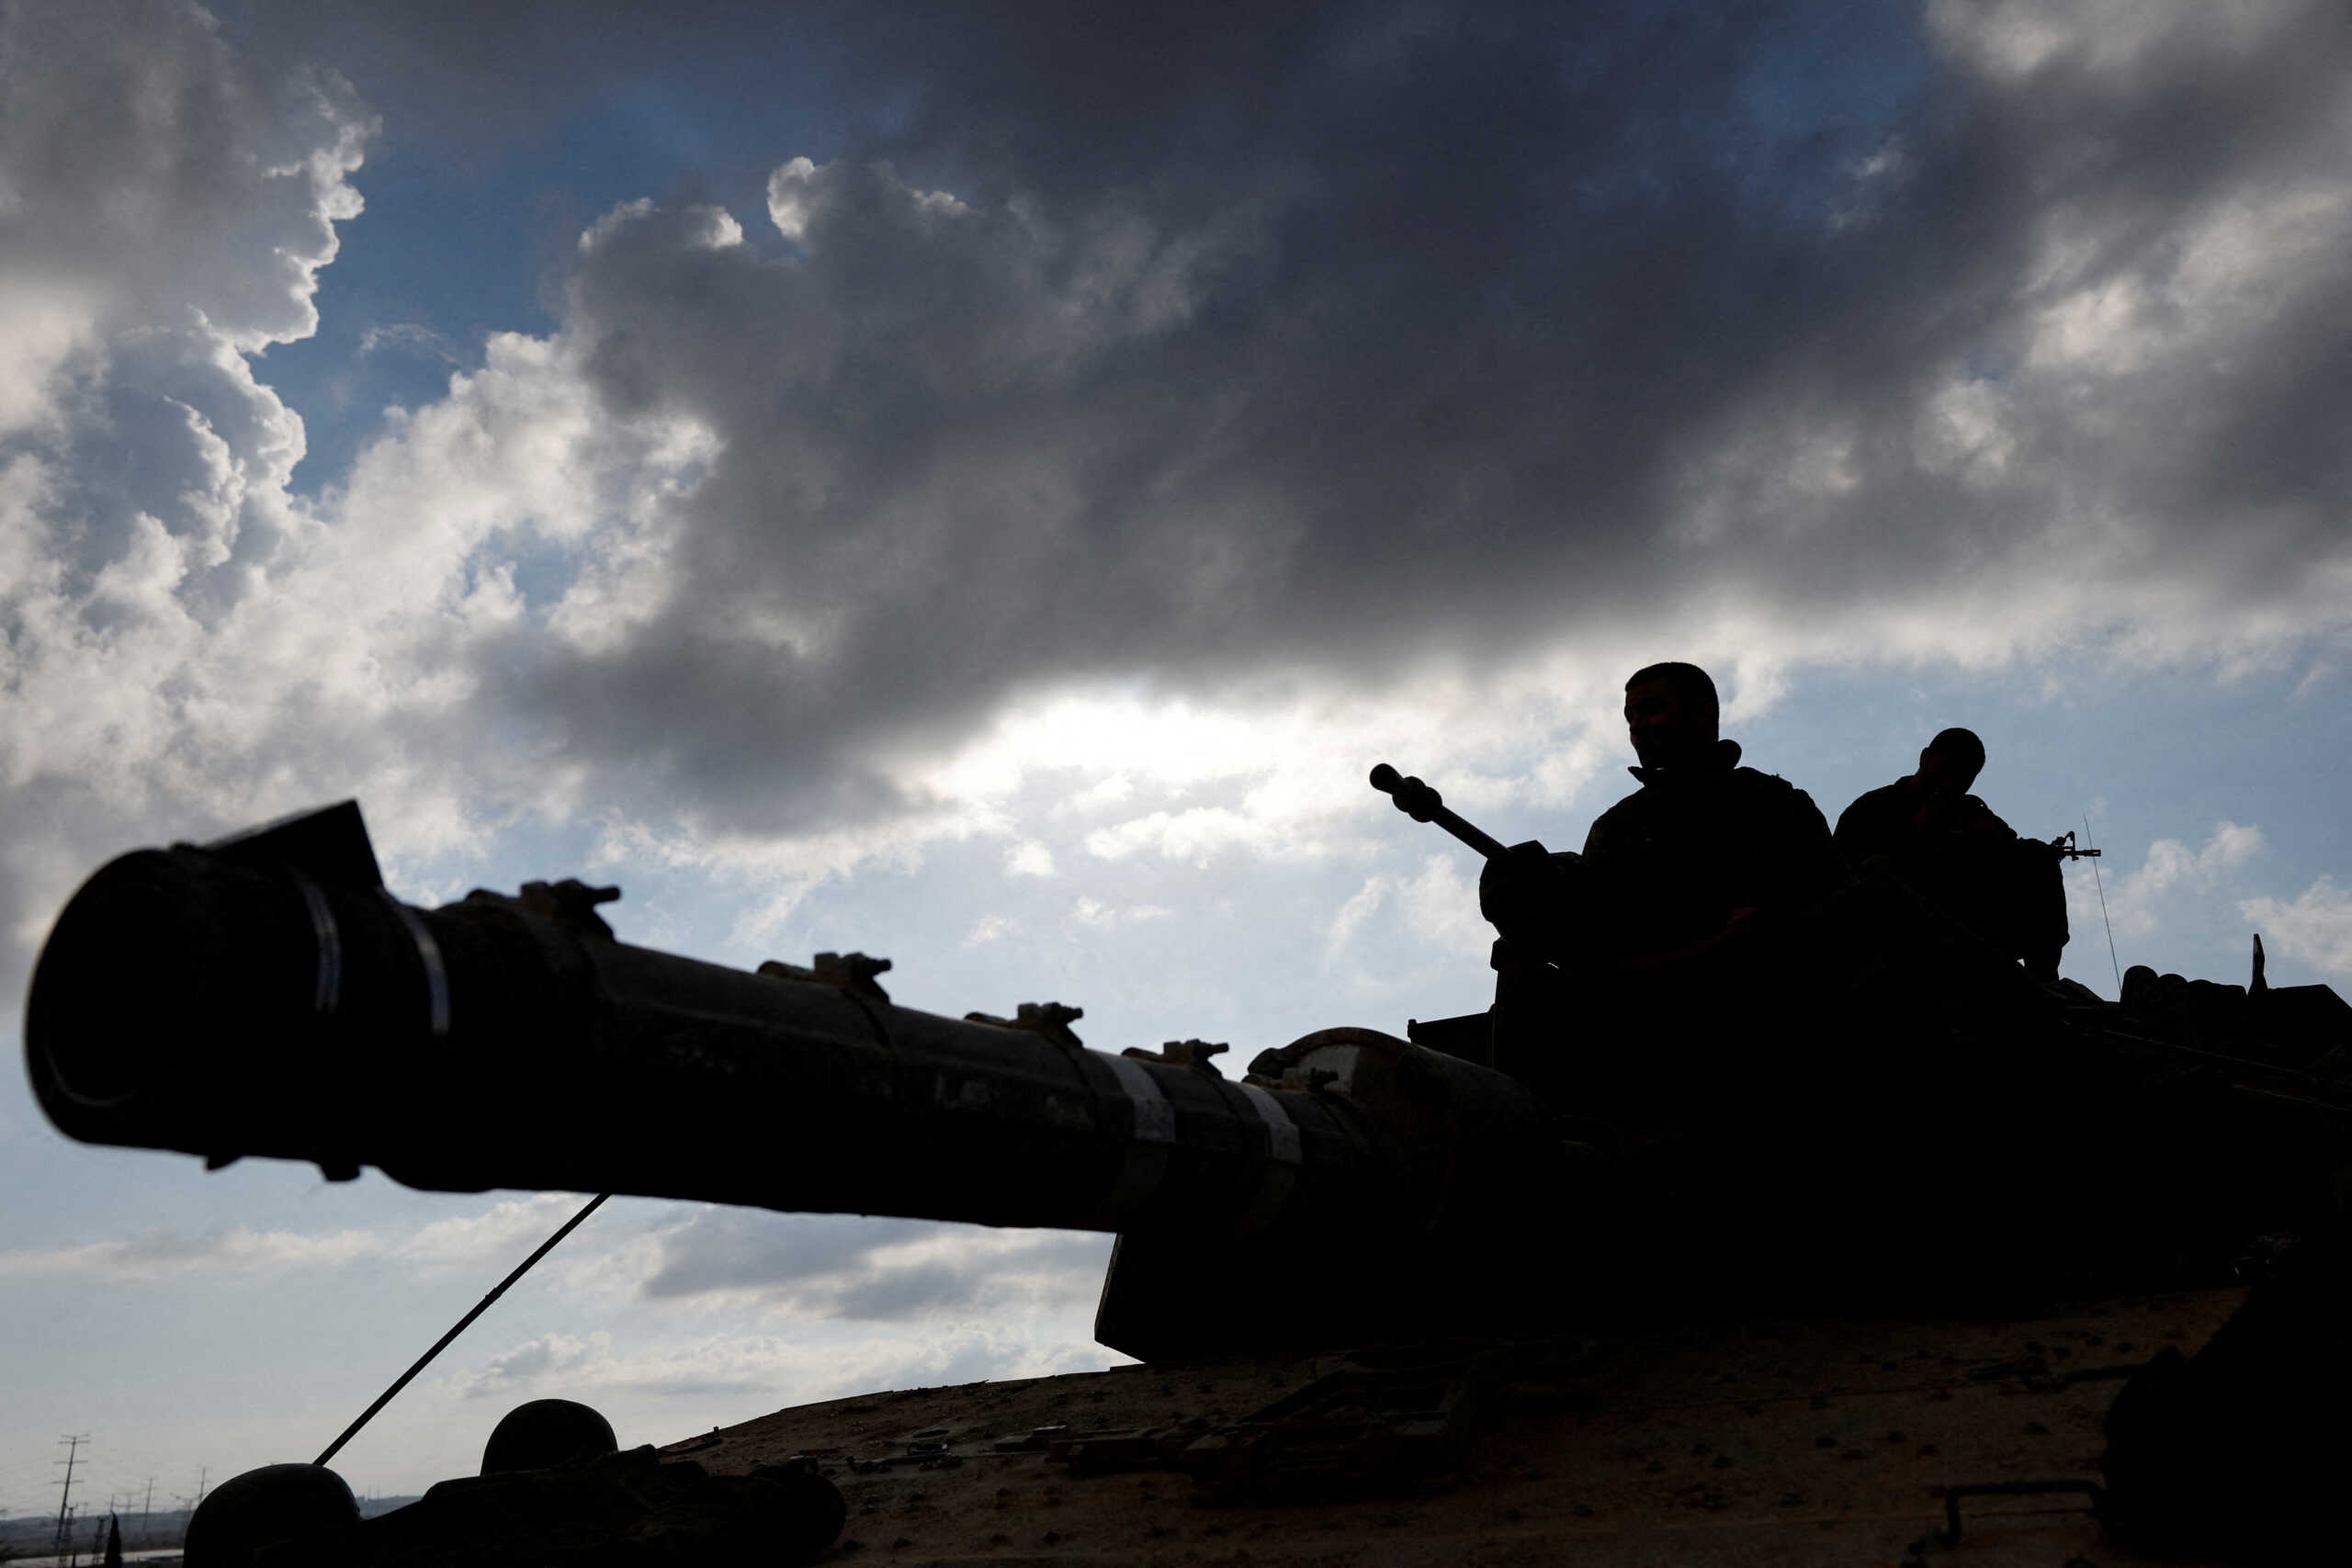 Πόλεμος στο Ισραήλ: Τι συμβαίνει με τη χερσαία επίθεση – «Περιμένουμε εντολές, έρχονται συγκρούσεις διαρκείας» λέει ο στρατός